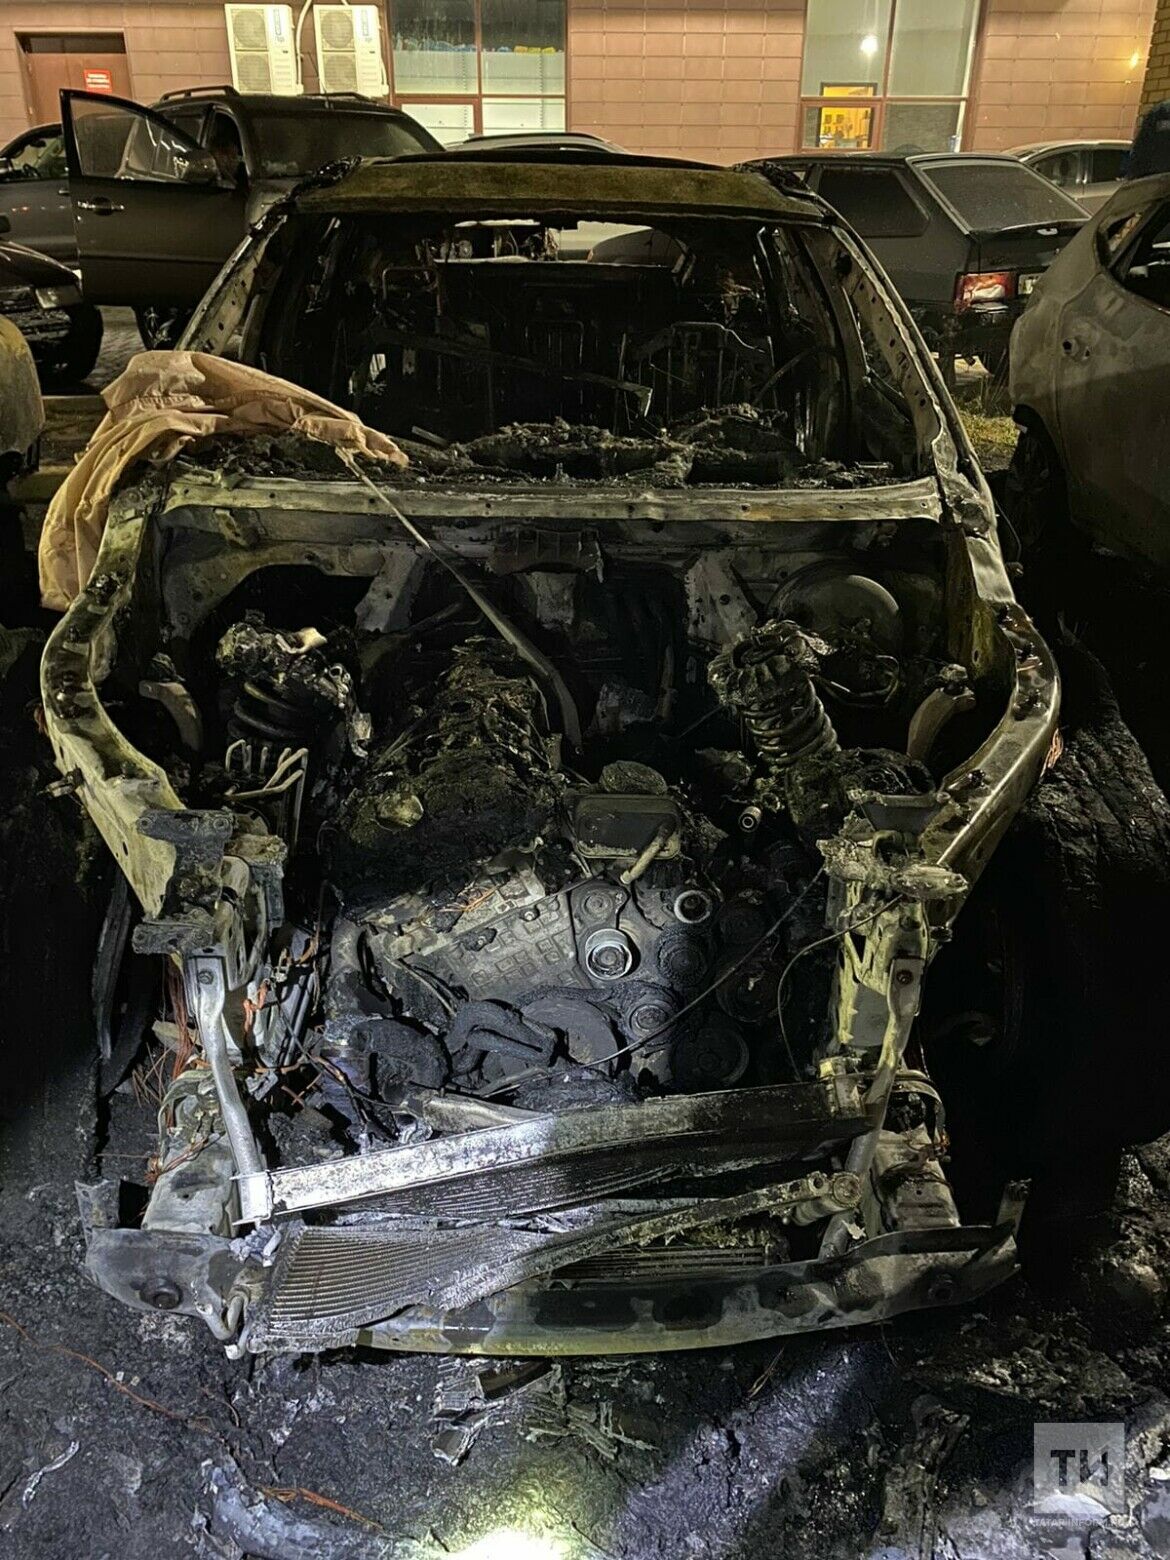 Ночью во дворе в Челнах сгорели несколько автомобилей